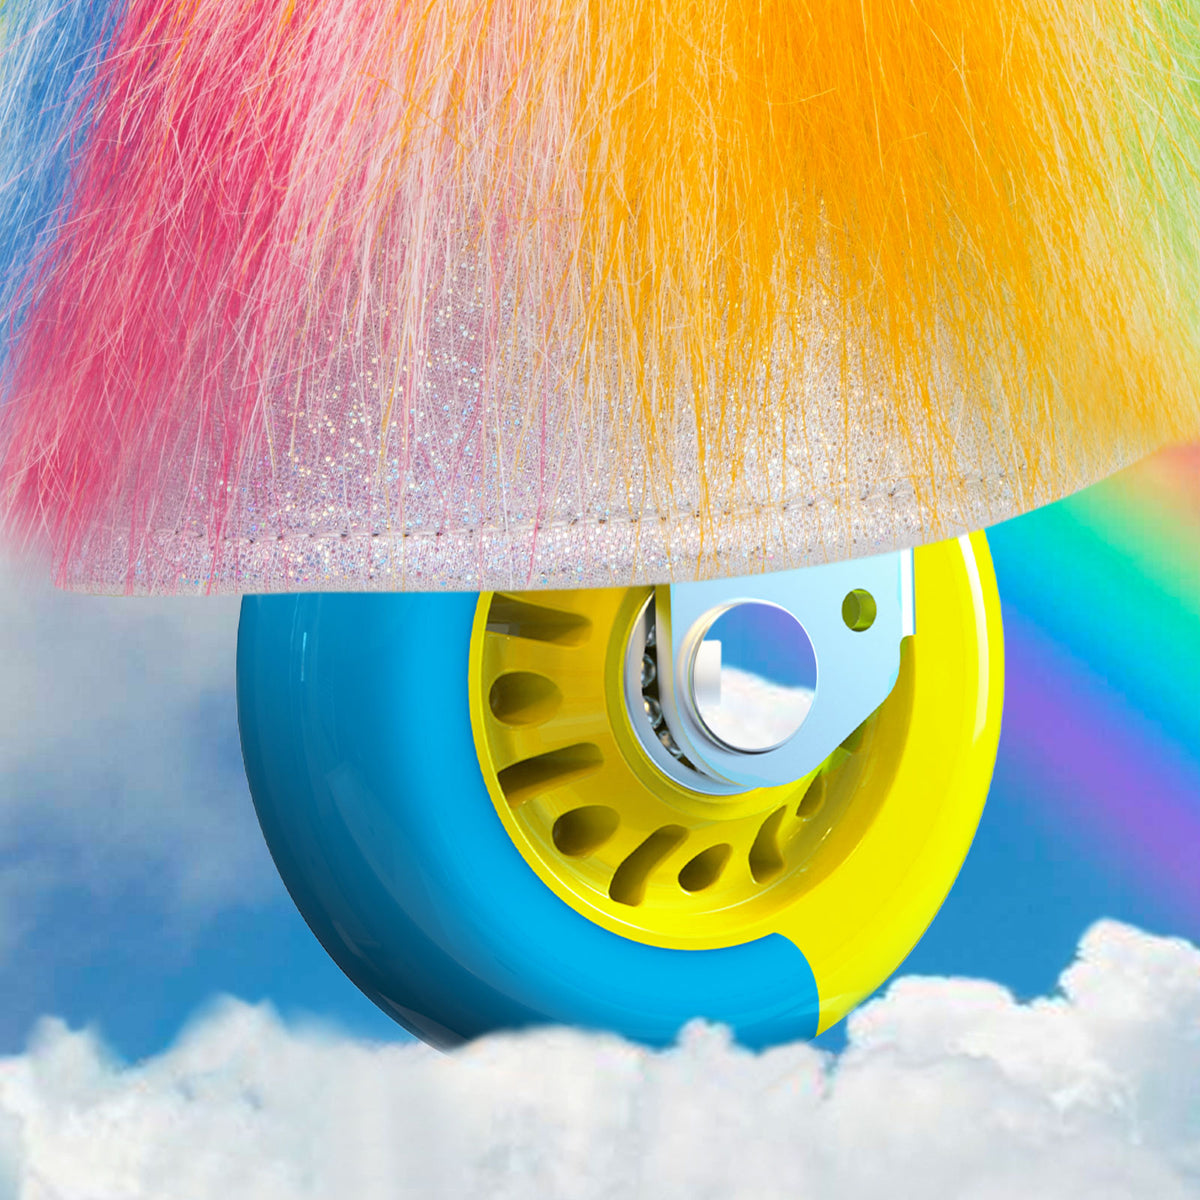 Modell X Regenbogen Einhorn Spielzeug für Alter 3-5